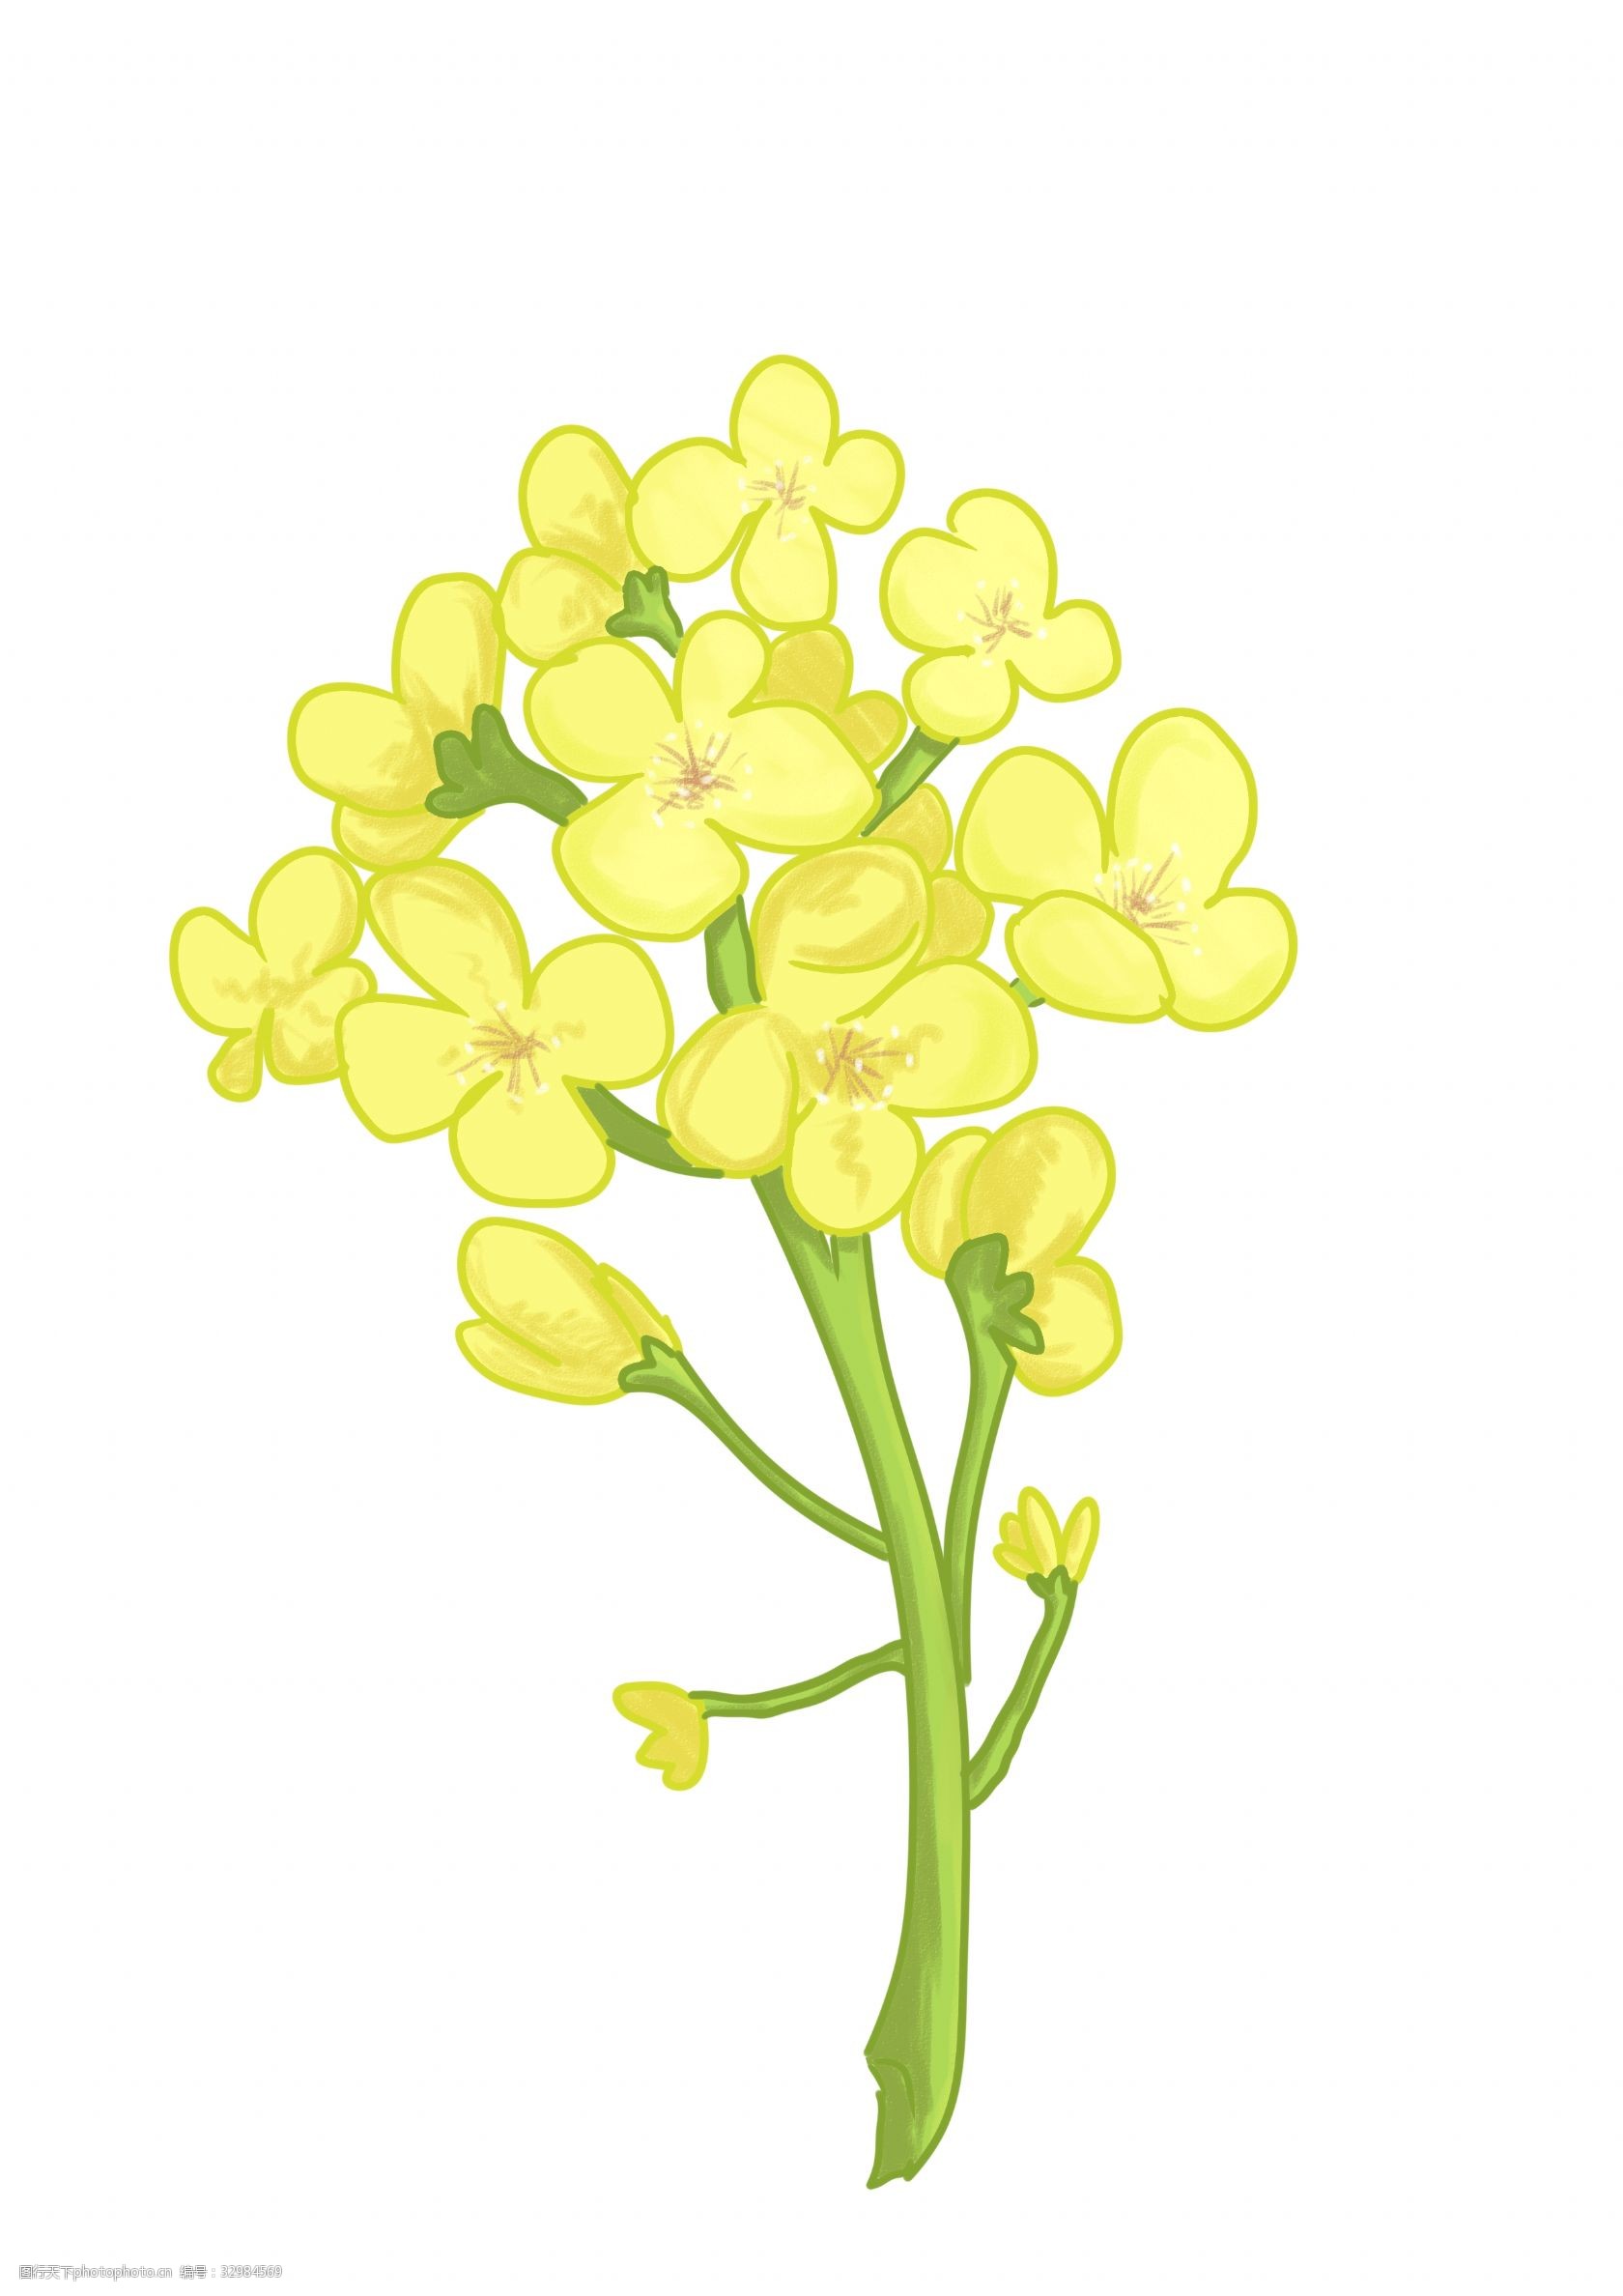 关键词:黄色油菜花的插画 黄色的油菜花 卡通插画 油菜花插画 植物